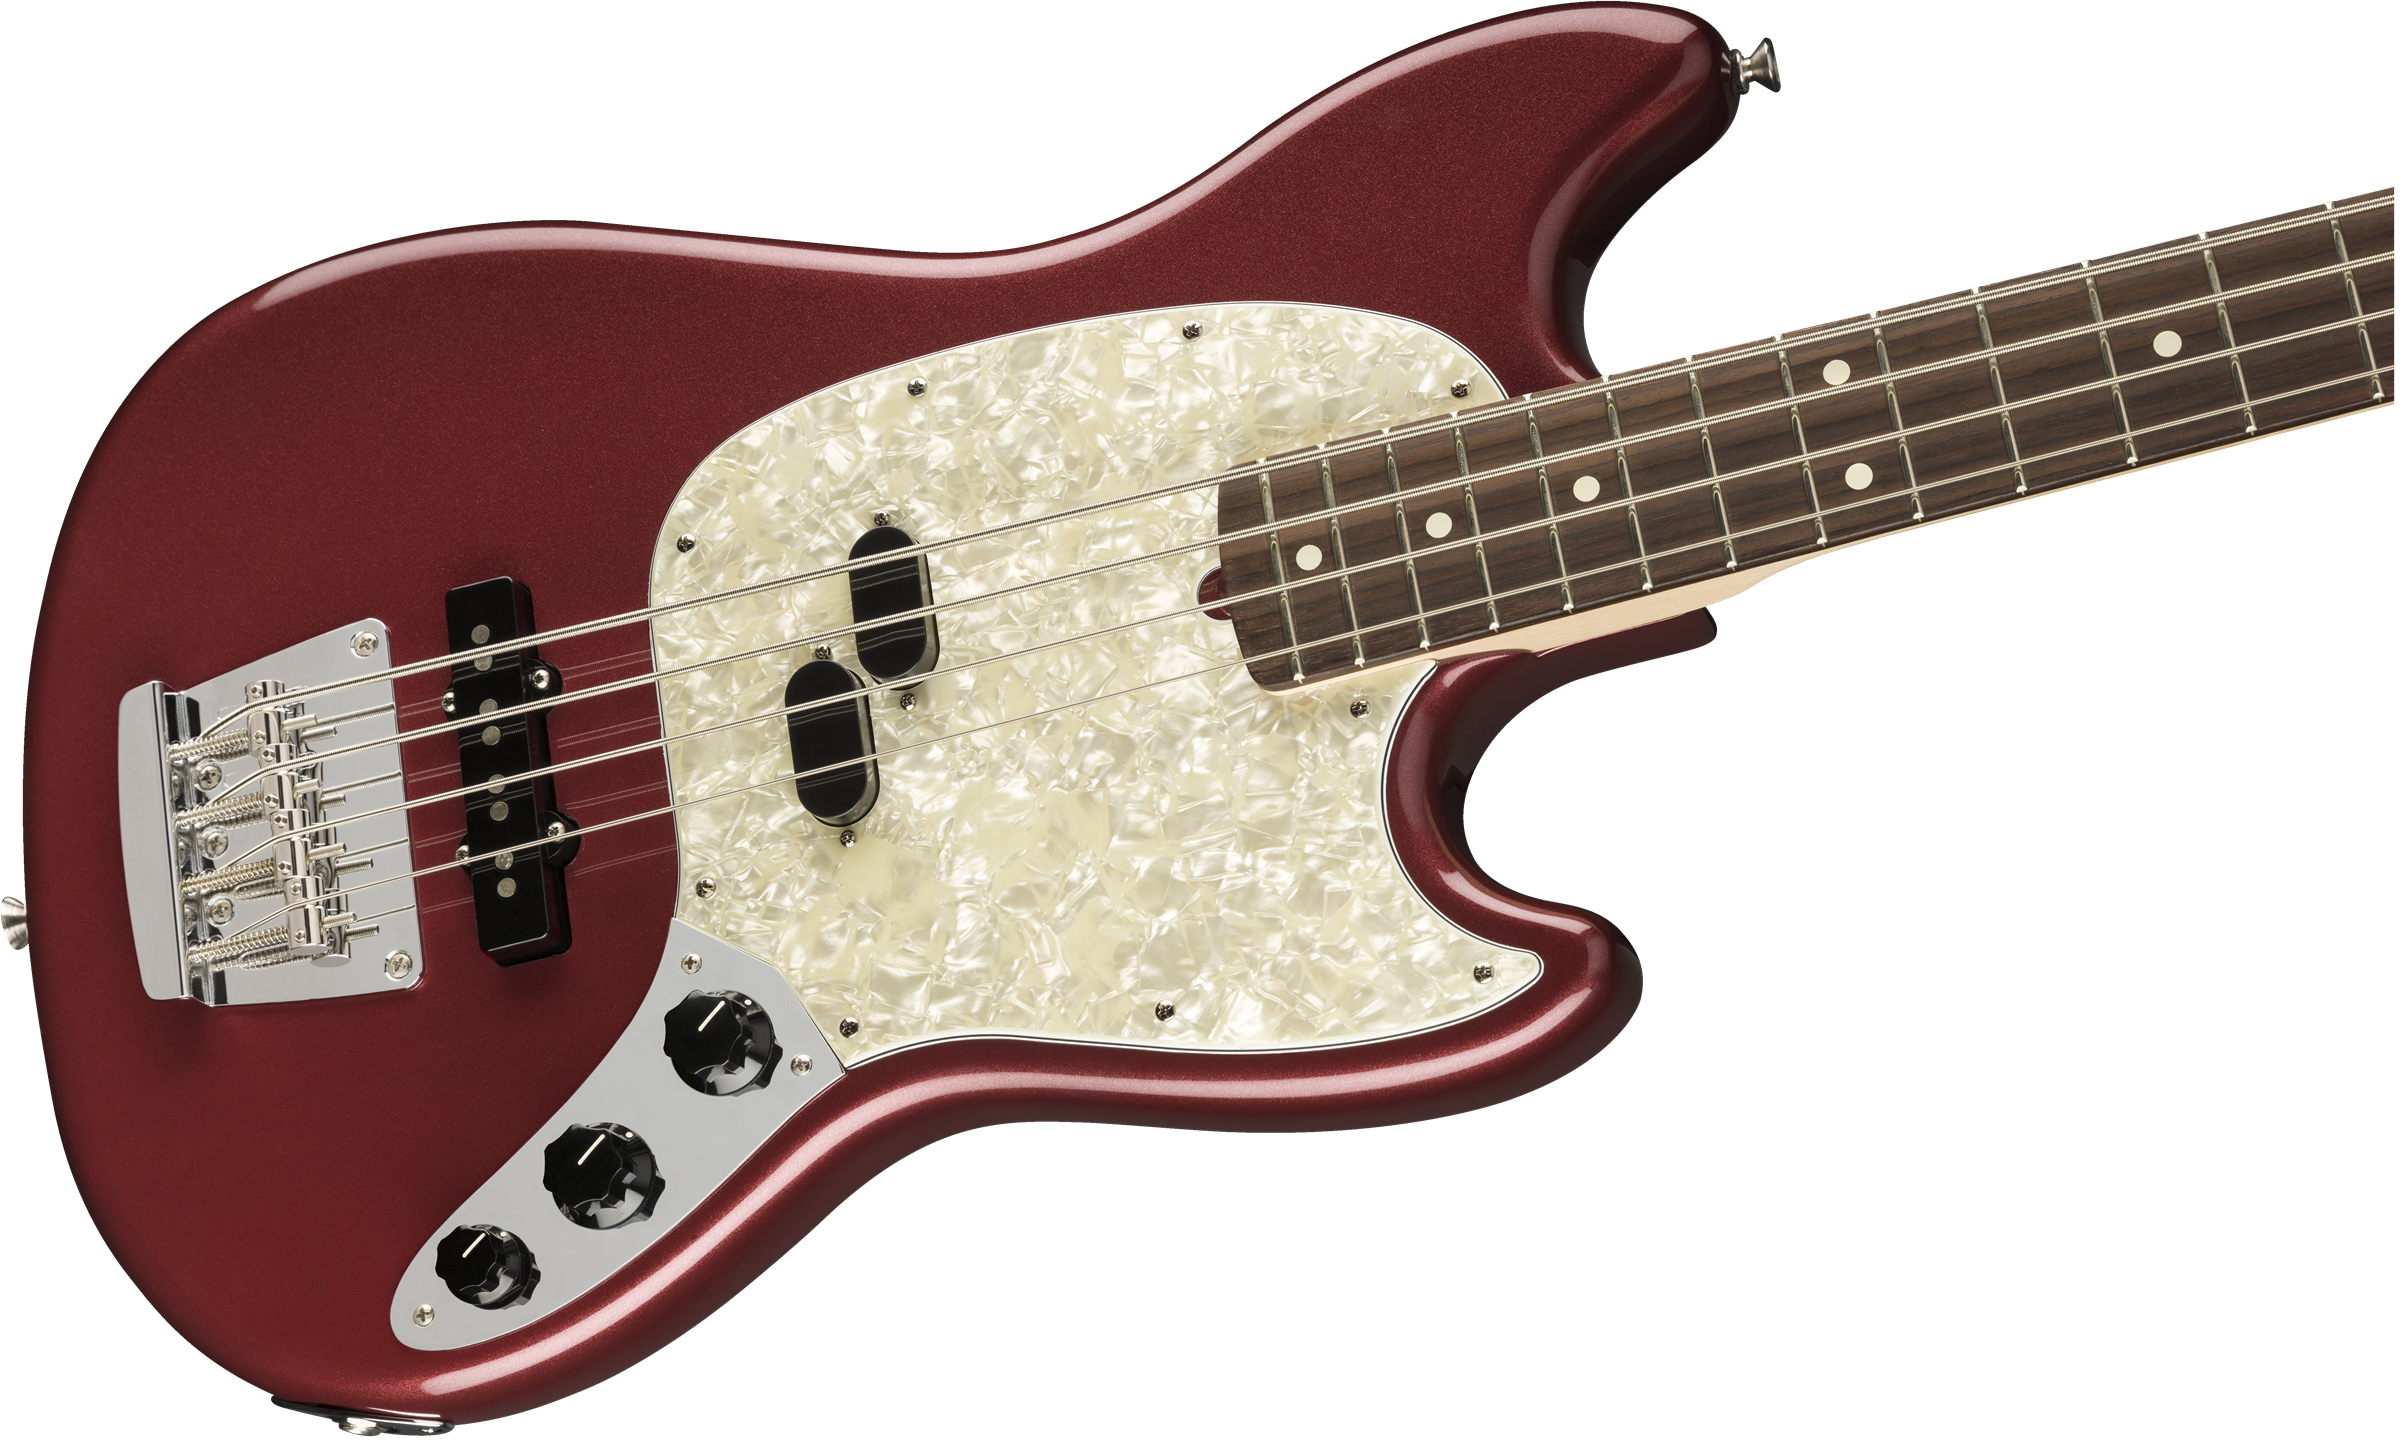 Fender American Performer Mustang Bass Rosewood Fingerboard - Aubergine 0198620345